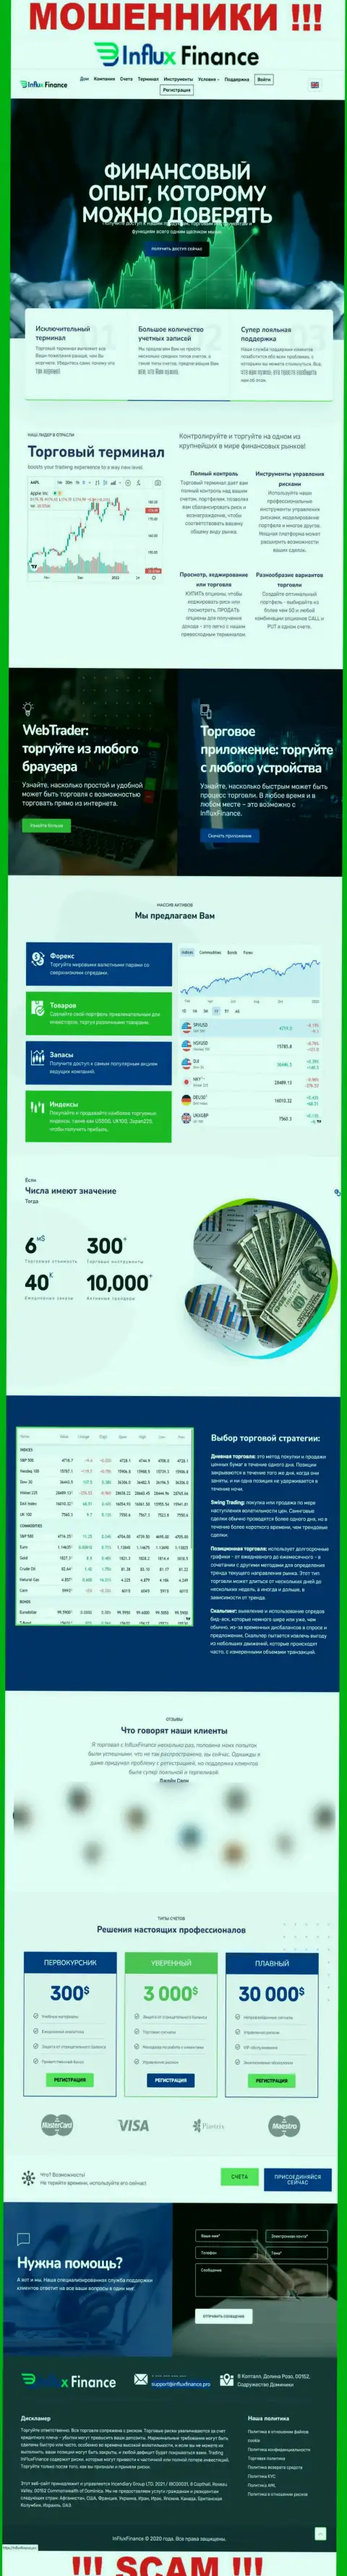 Фейковая информация от InFluxFinance Pro на официальном информационном ресурсе мошенников